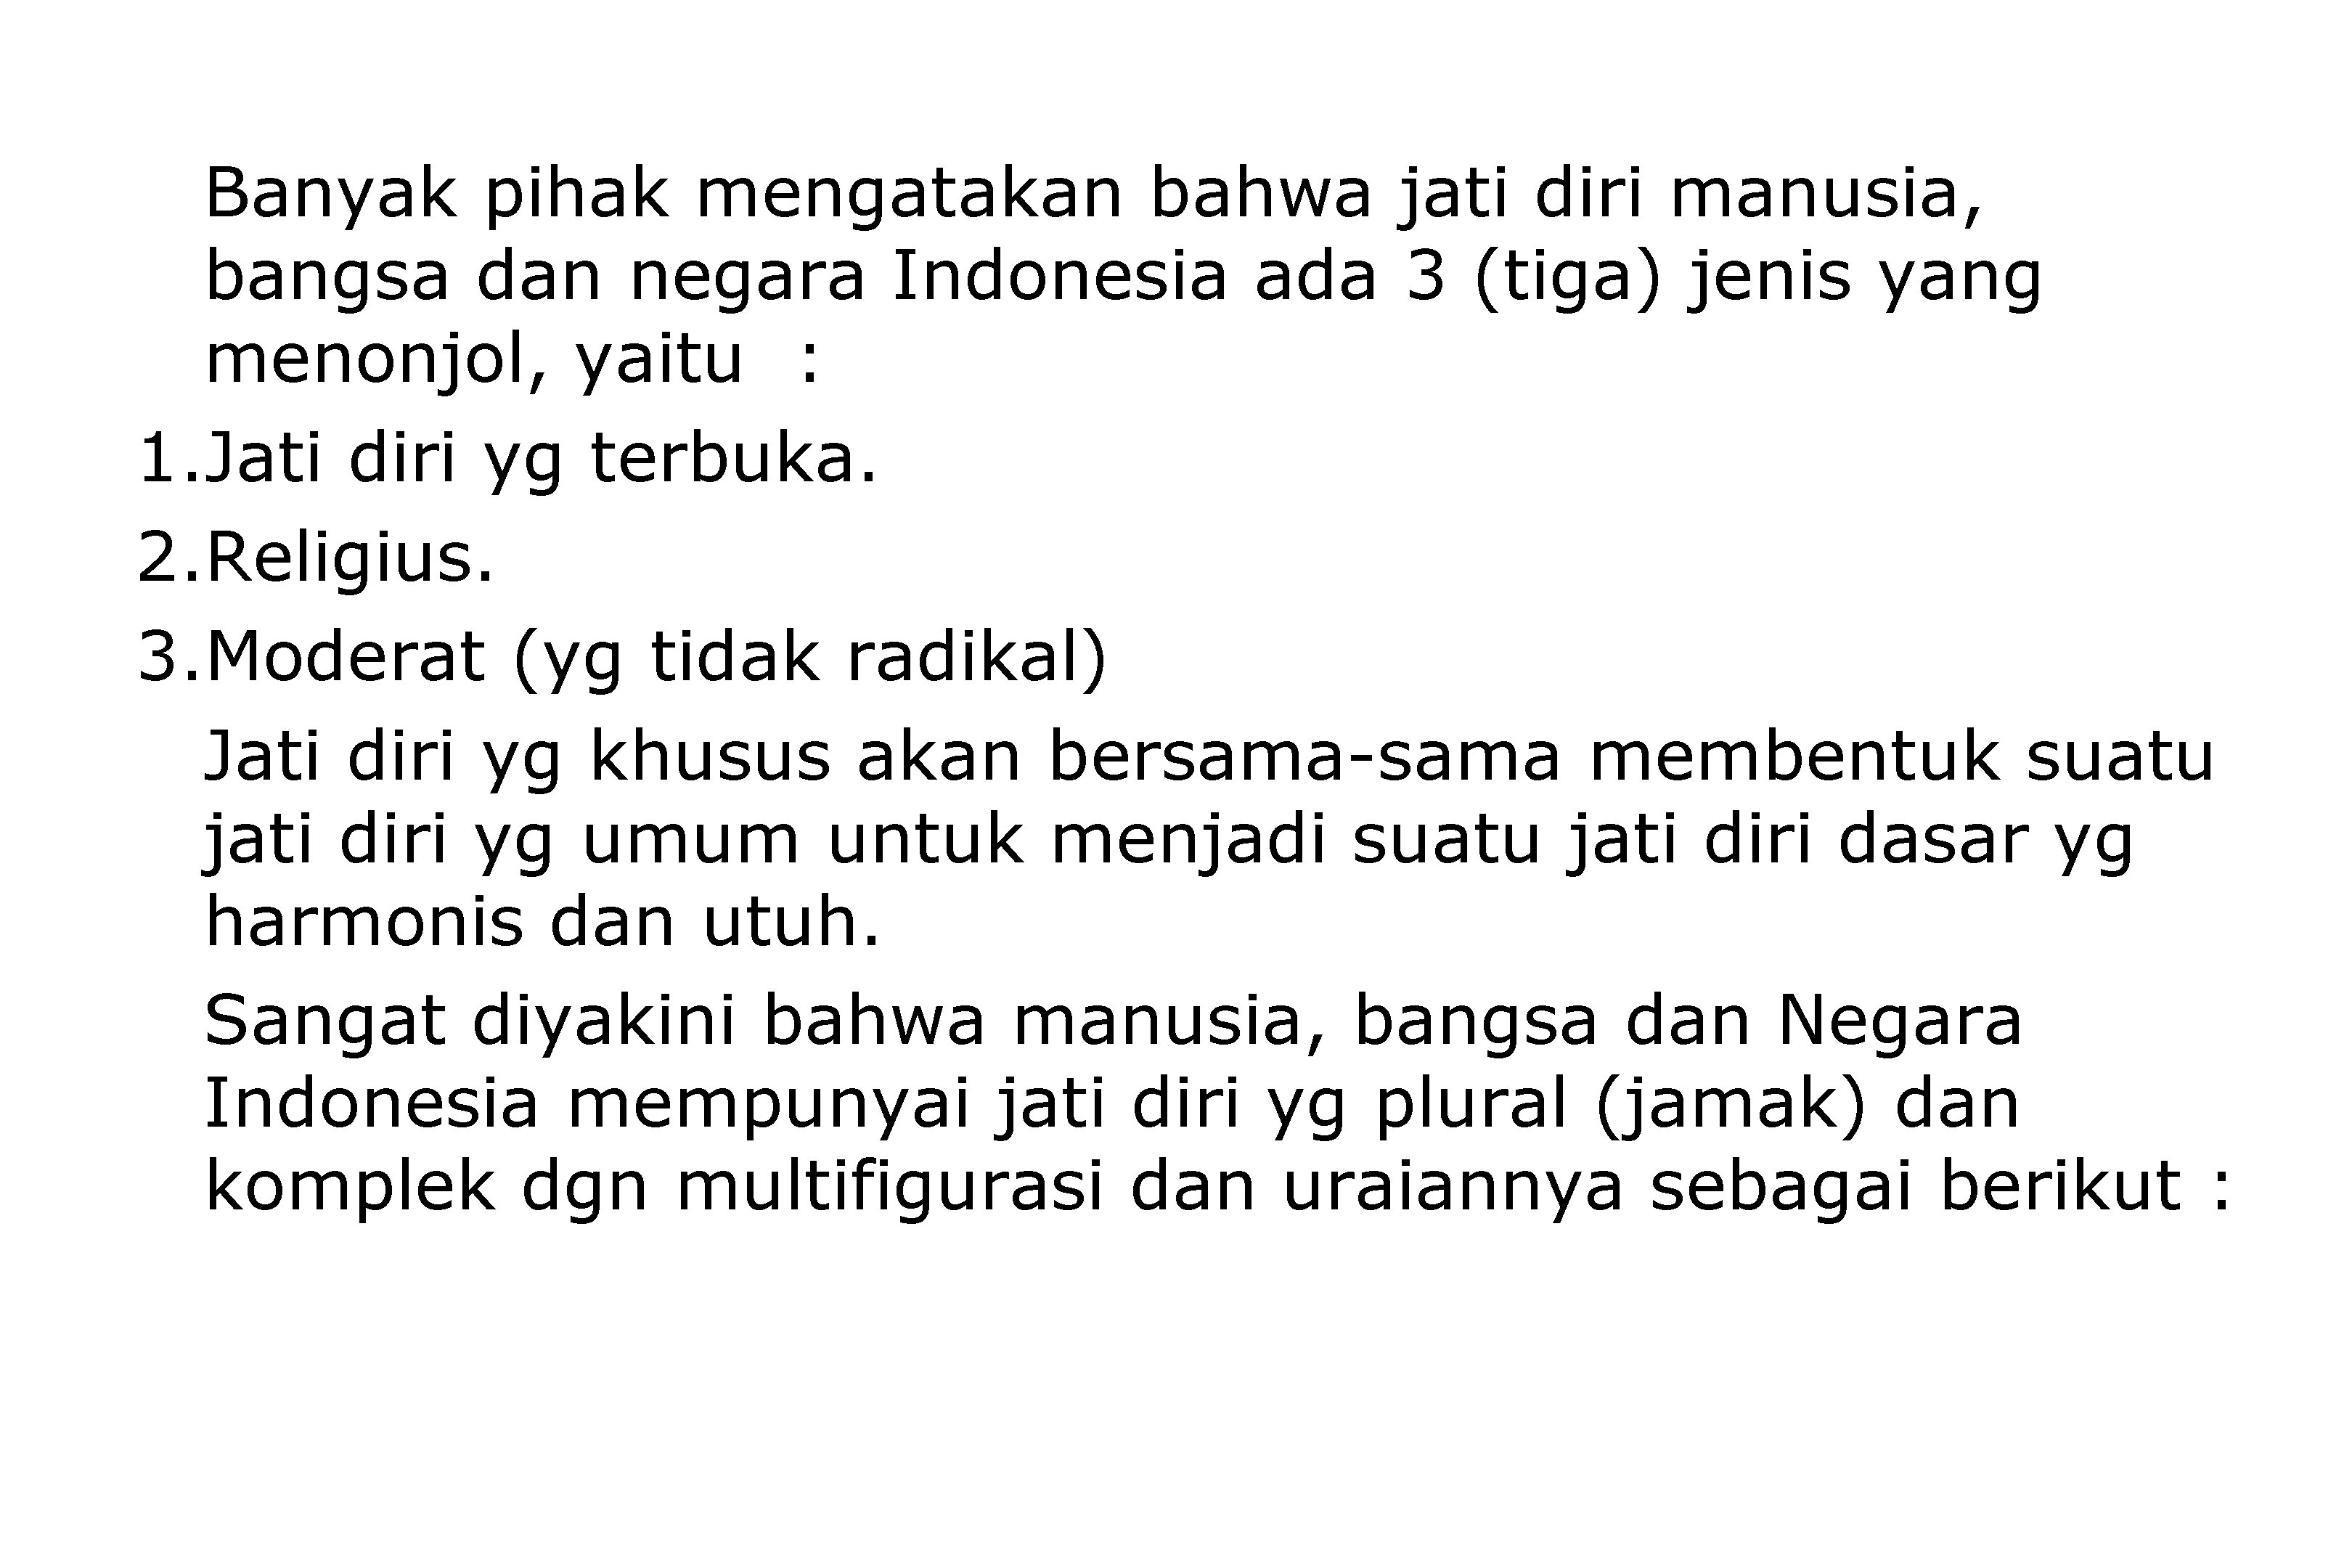 Banyak pihak mengatakan bahwa jati diri manusia, bangsa dan negara Indonesia ada 3 (tiga)